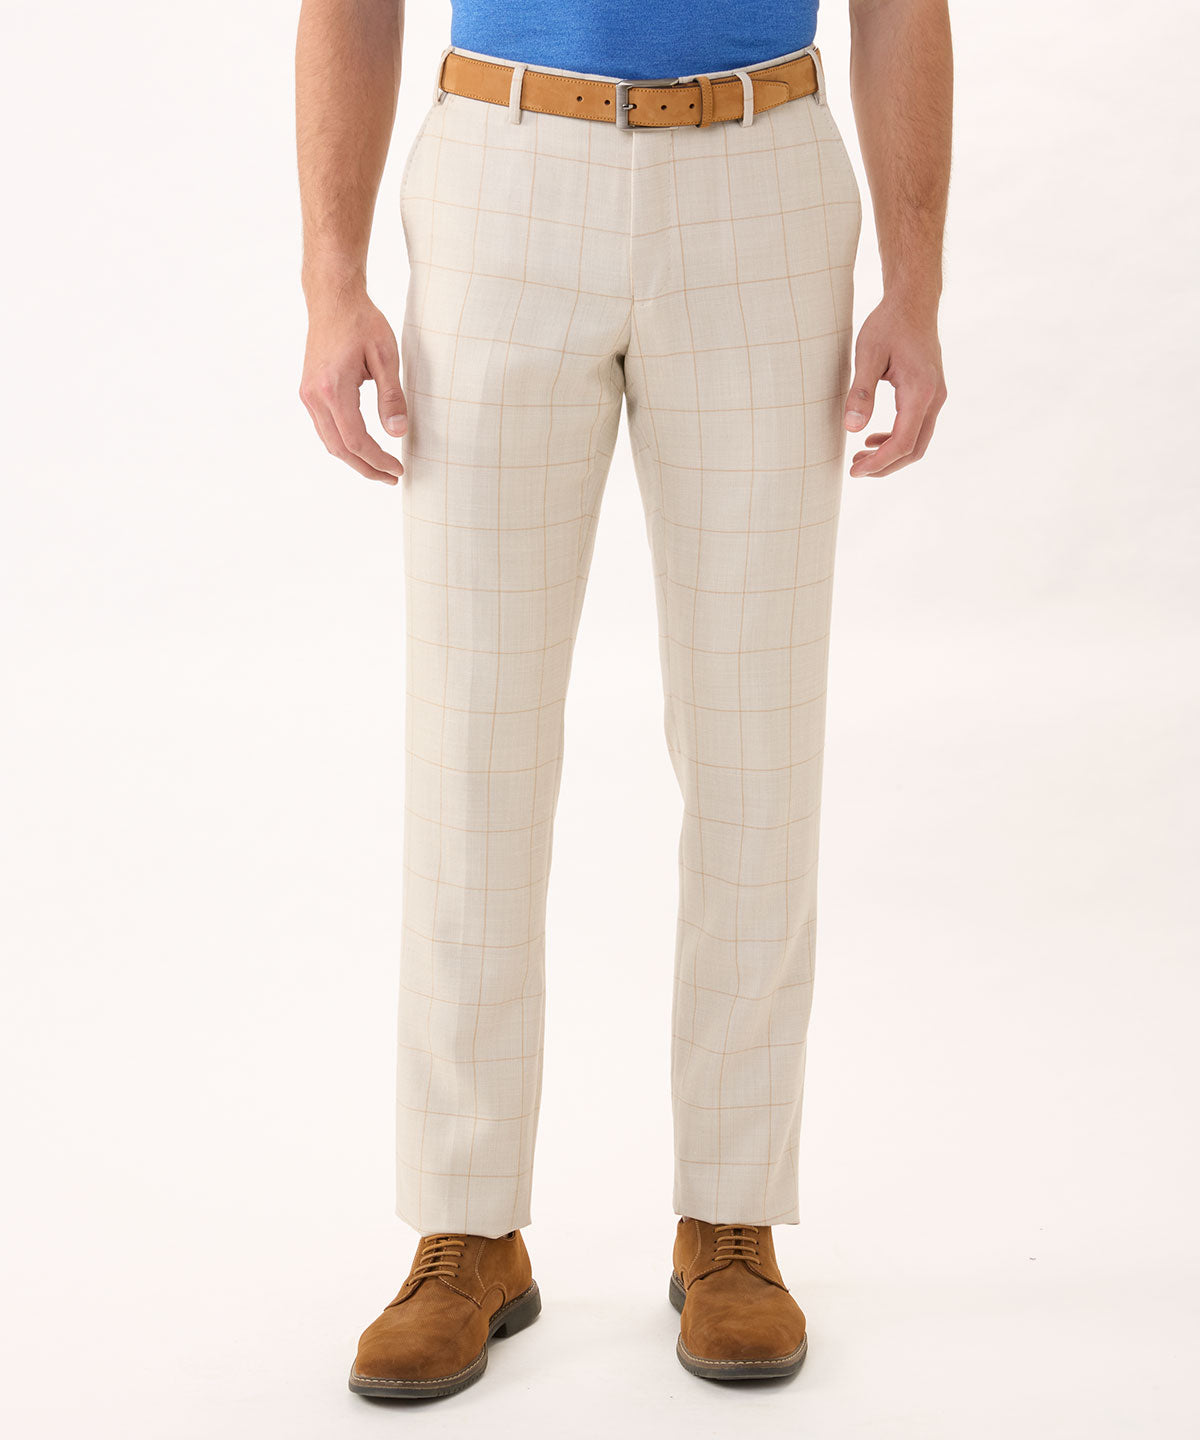 Best Deals for Mens Tweed Pants